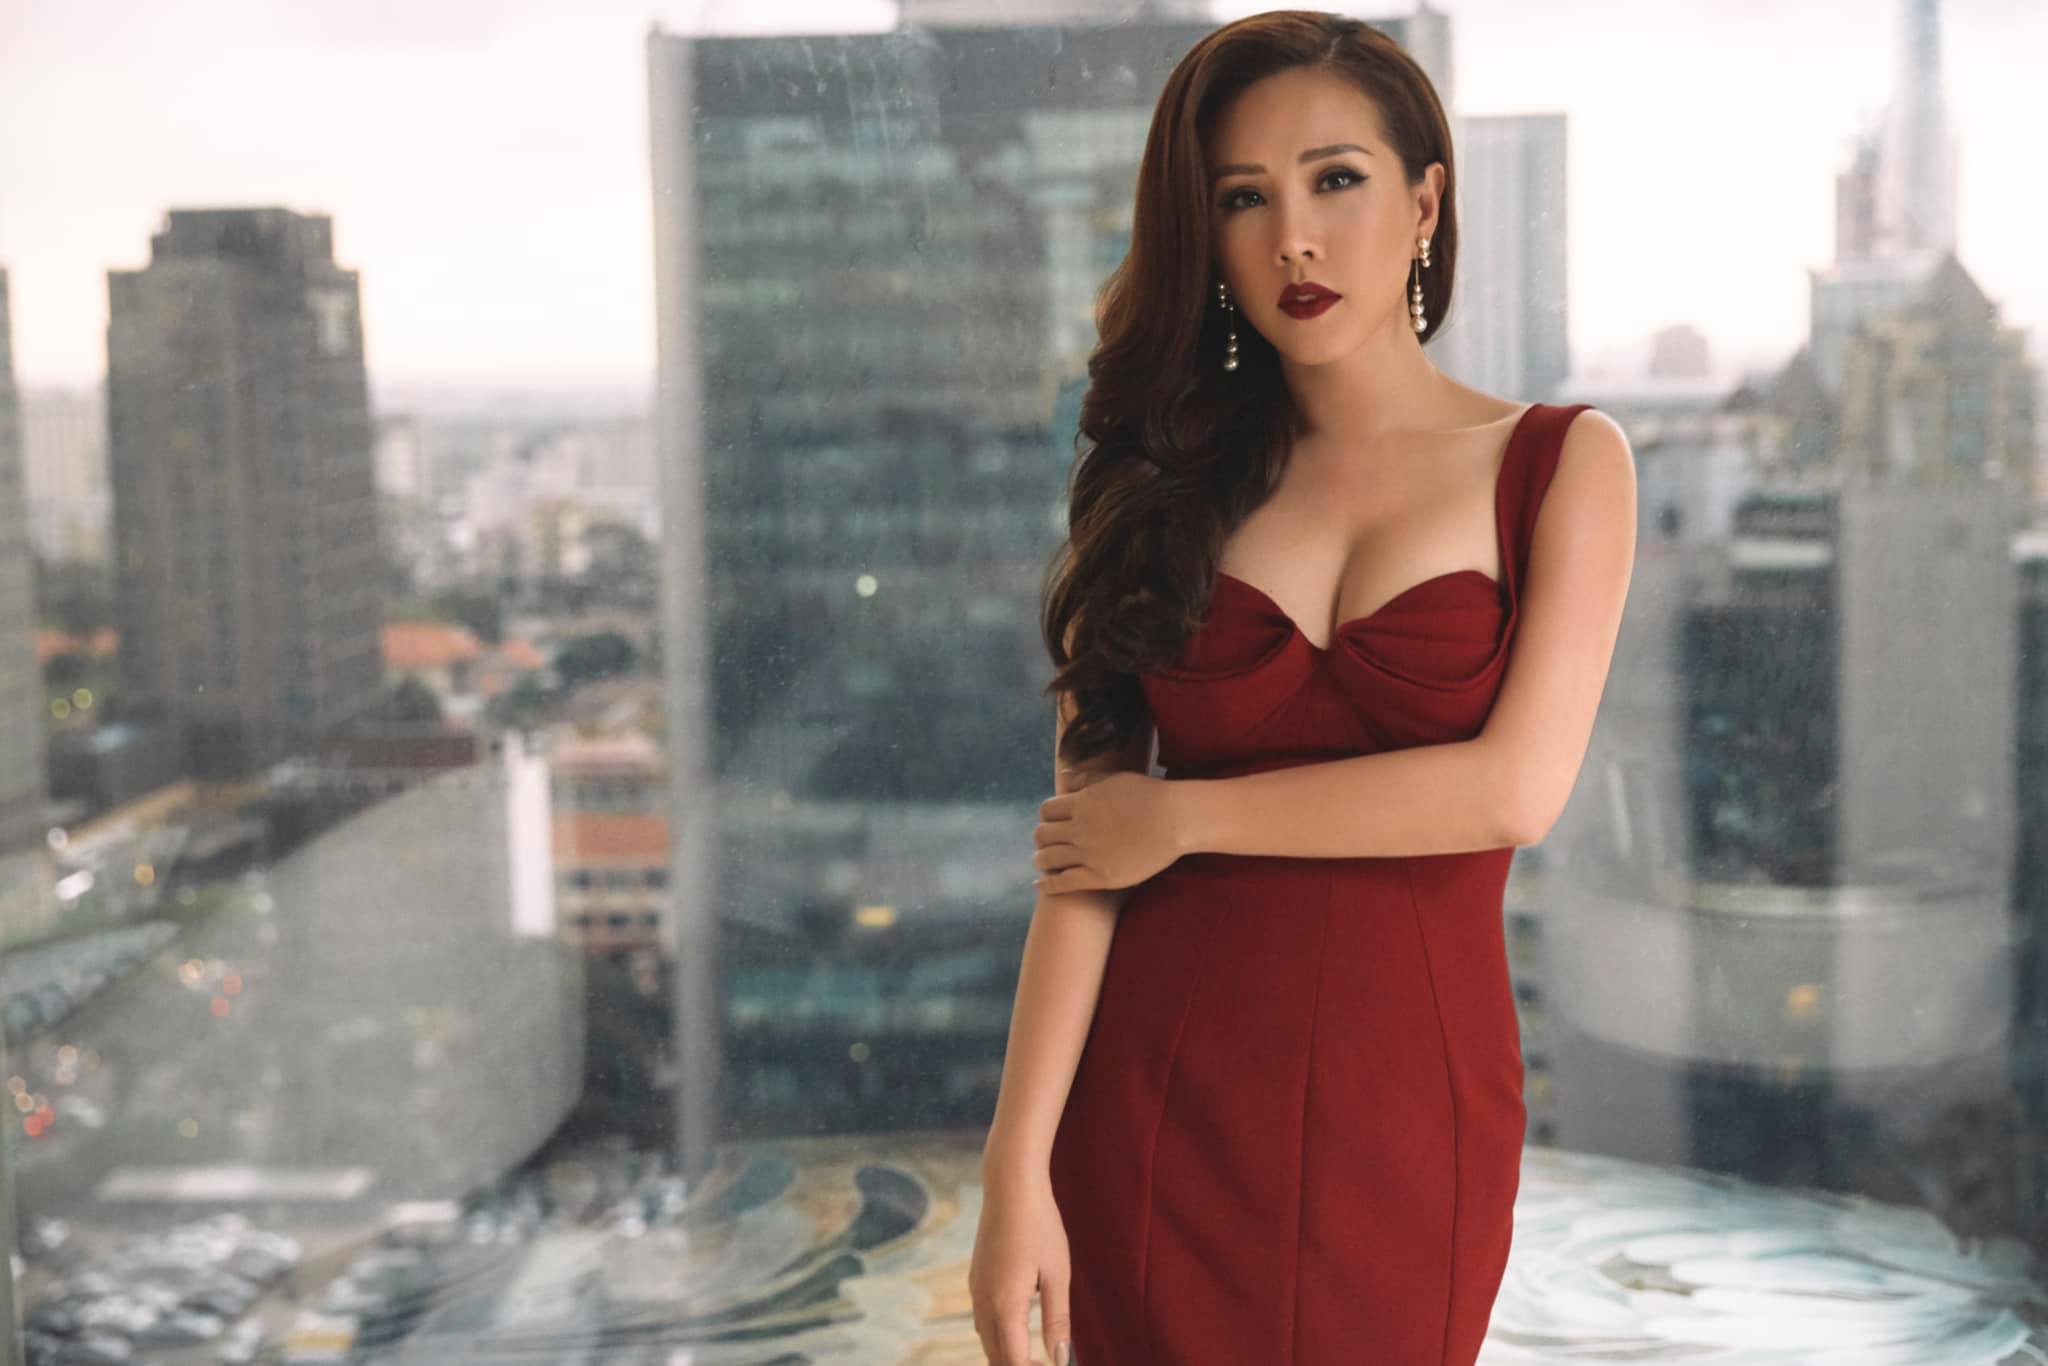 Hoa hậu có hợp đồng hôn nhân triệu đô với bạn trai Việt kiều, kiếm 10 tỷ mỗi tháng: Sự thật ngã ngửa